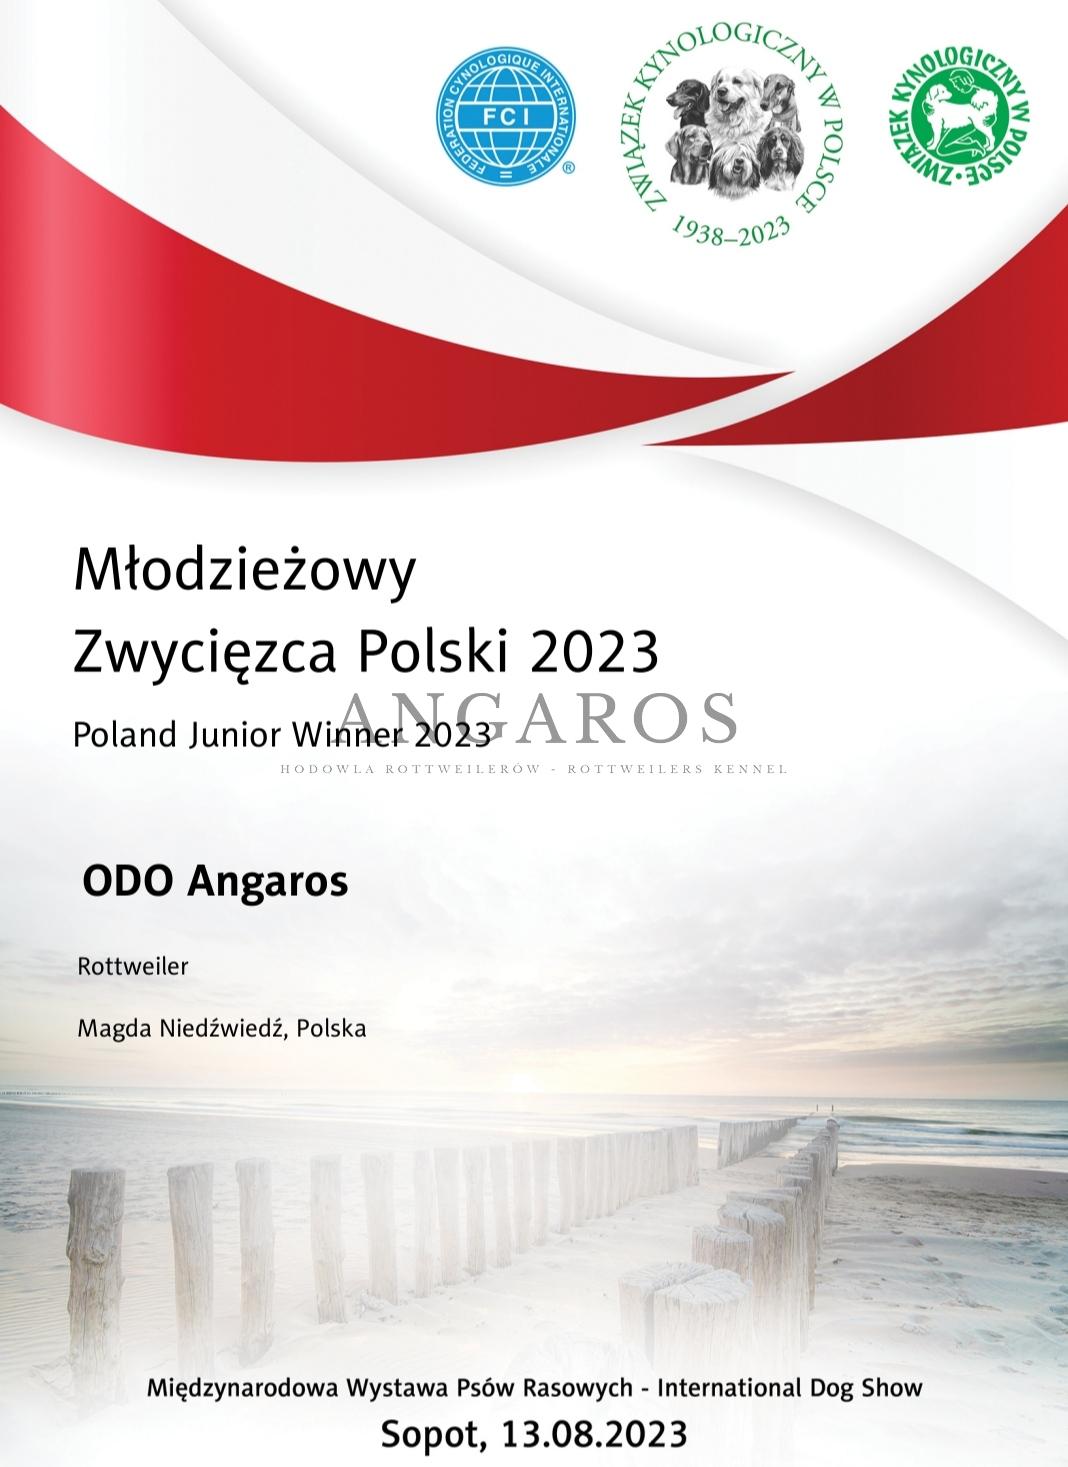 W dniu dzisiejszym otrzymaliśmy dyplomy naszych Zwycięzców Polski 2023! ODA Angaros i SEPHORY Angaros. | Rottweiler - Hodowla Rottweilerów Angaros - Rottweilers - Rottweilery